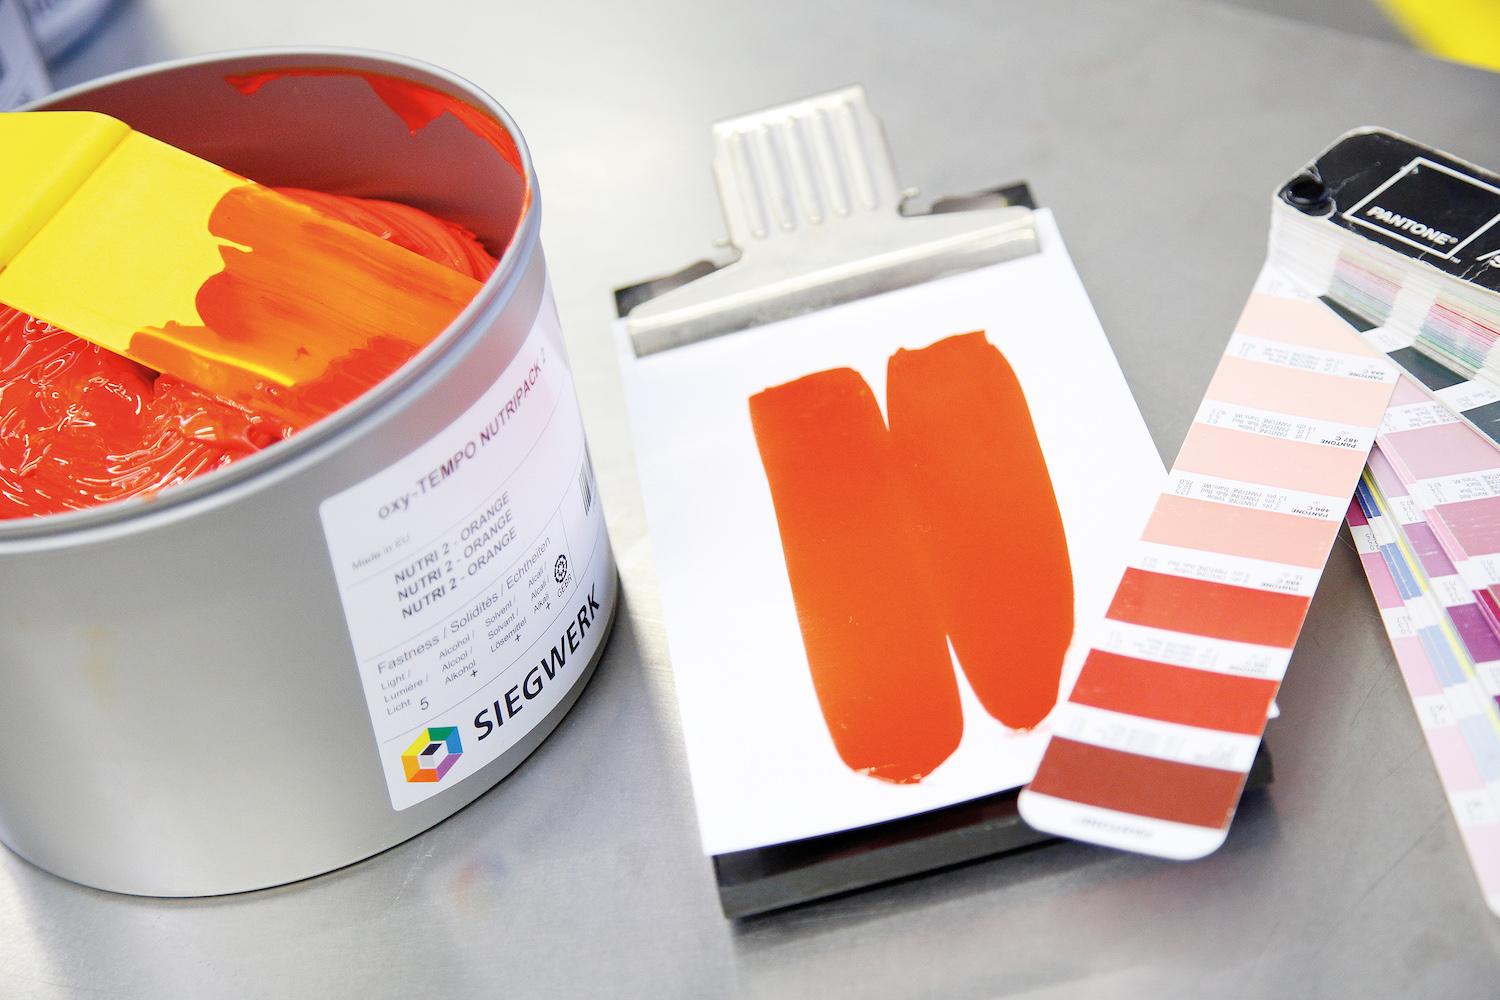 Siegwerk inks and coatings for packaging and printing